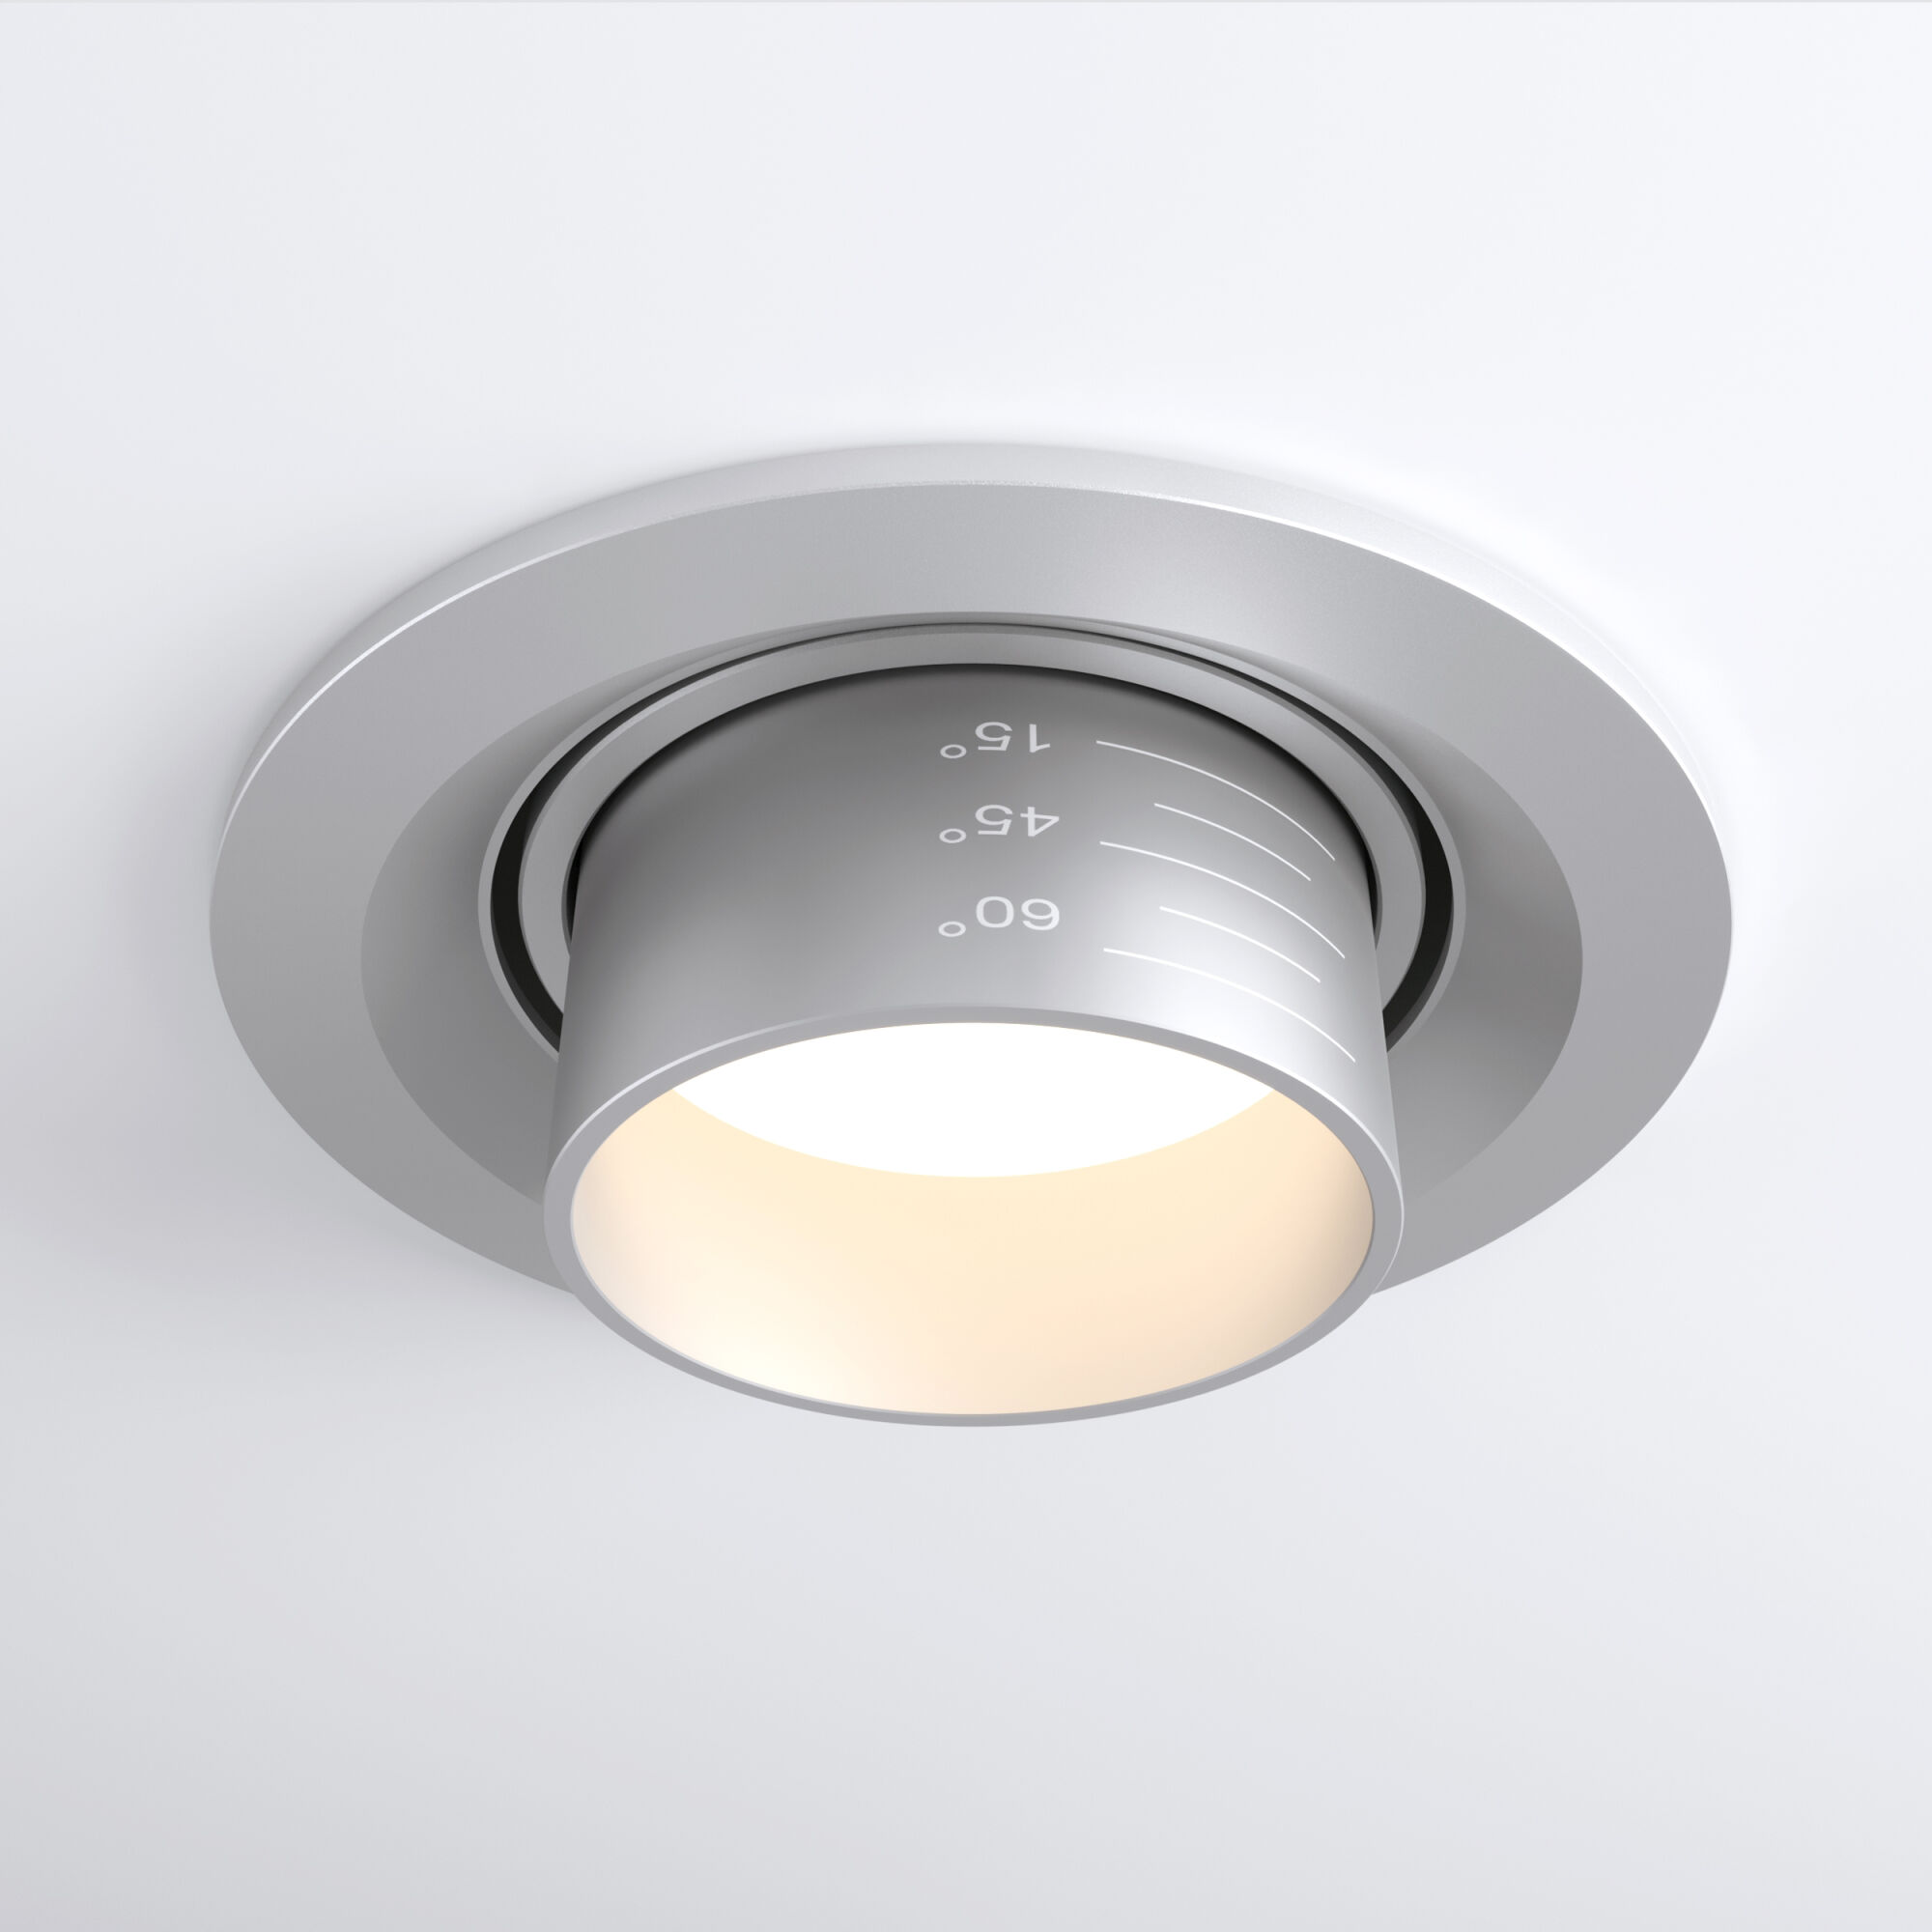 Встраиваемый светодиодный светильник с регулировкой угла освещения Zoom 15W 4200K серебро 9920 LED